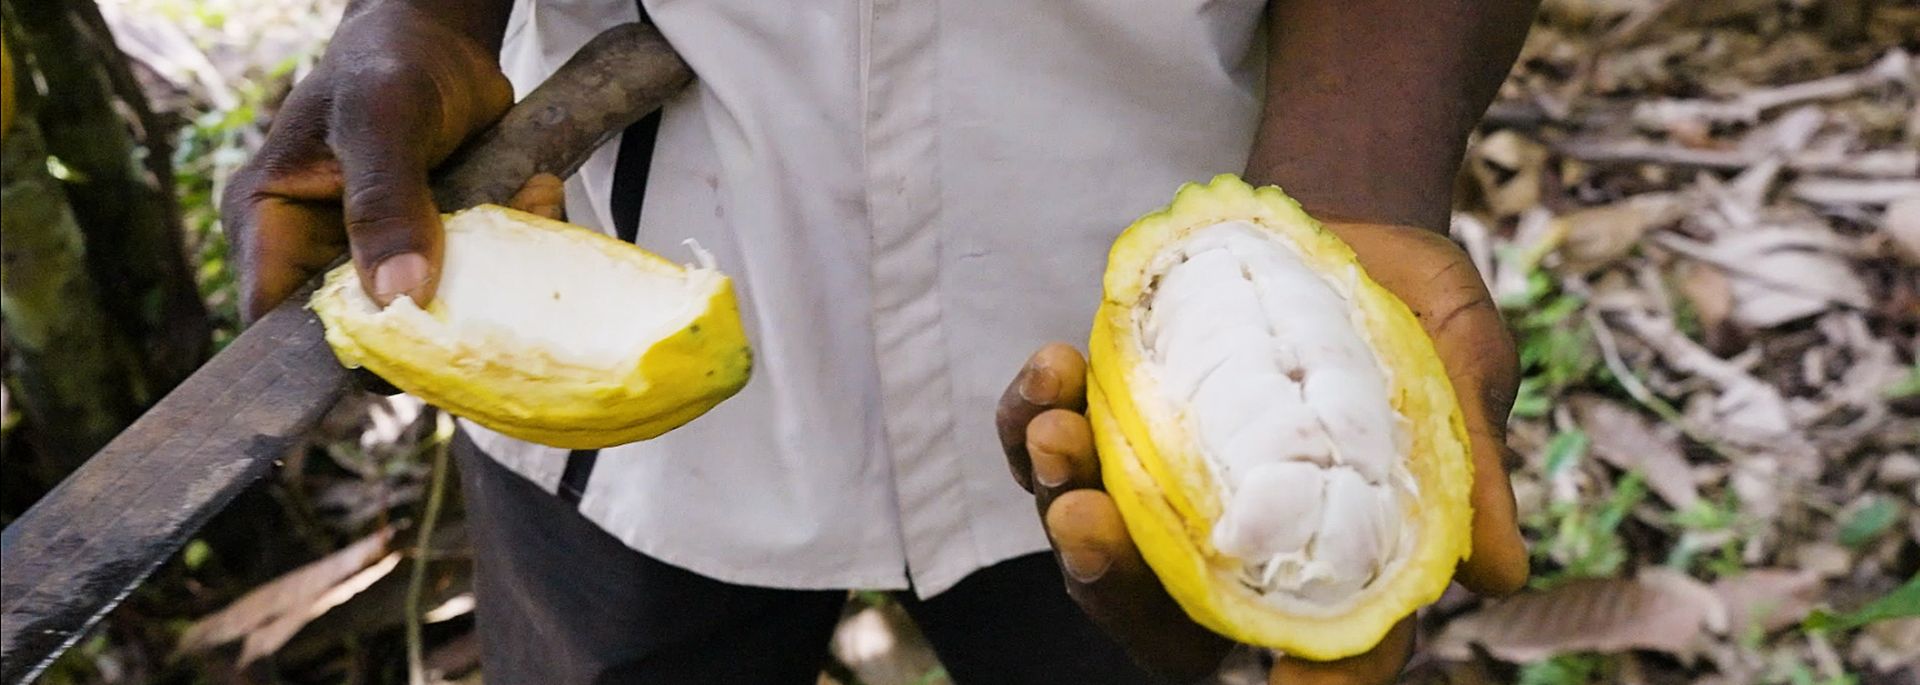 Ein Arbeiter zeigt eine frisch geerntete Kakao-Bohne in Ghana